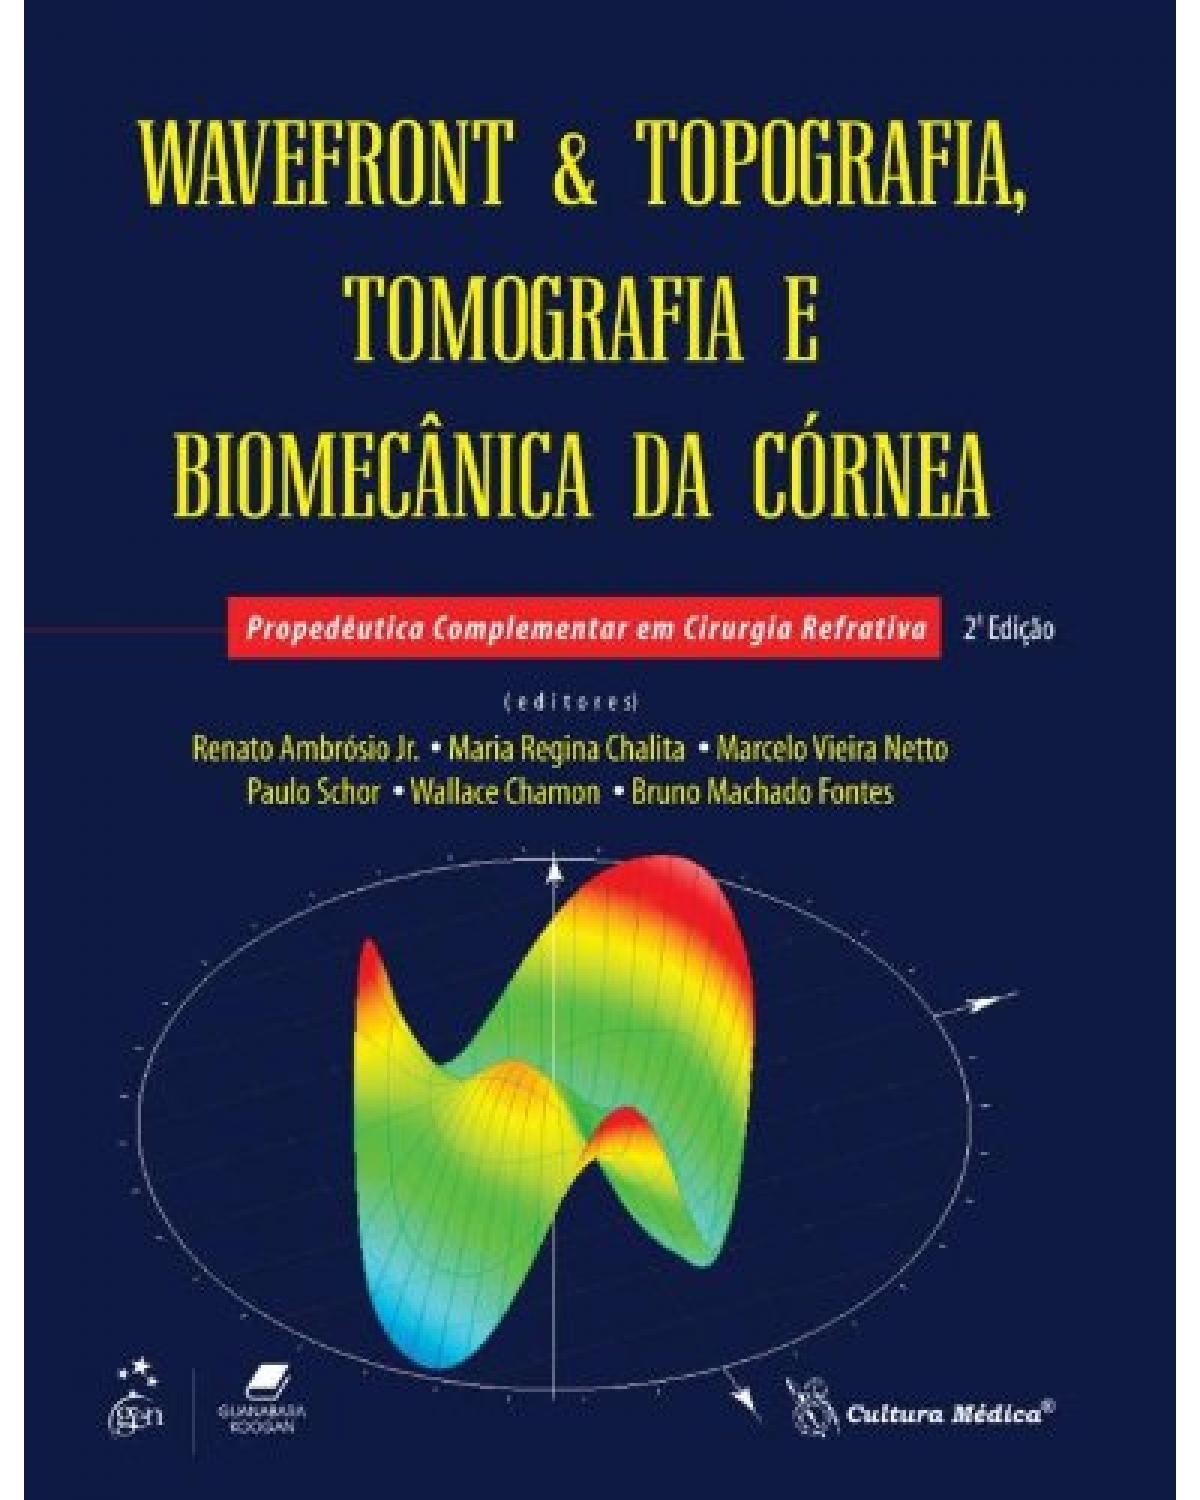 Wavefront e topografia, tomografia e biomecânica da córnea - Propedêutica complementar em cirurgia refrativa - 2ª Edição | 2013